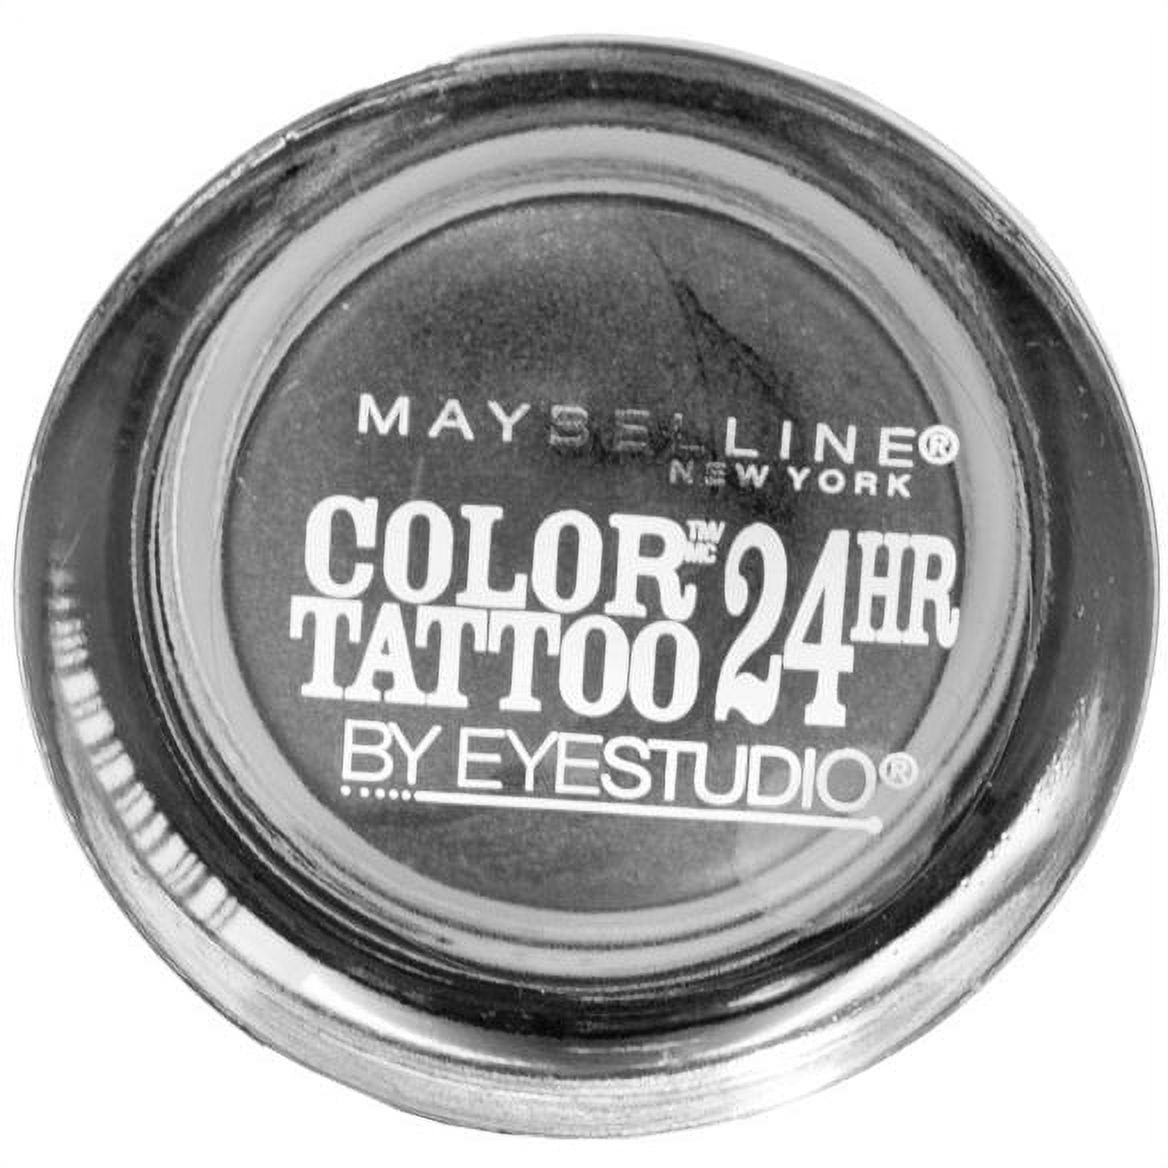 Maybelline Eye Studio Color Tattoo, 24 Hour Eyeshadow - image 1 of 3